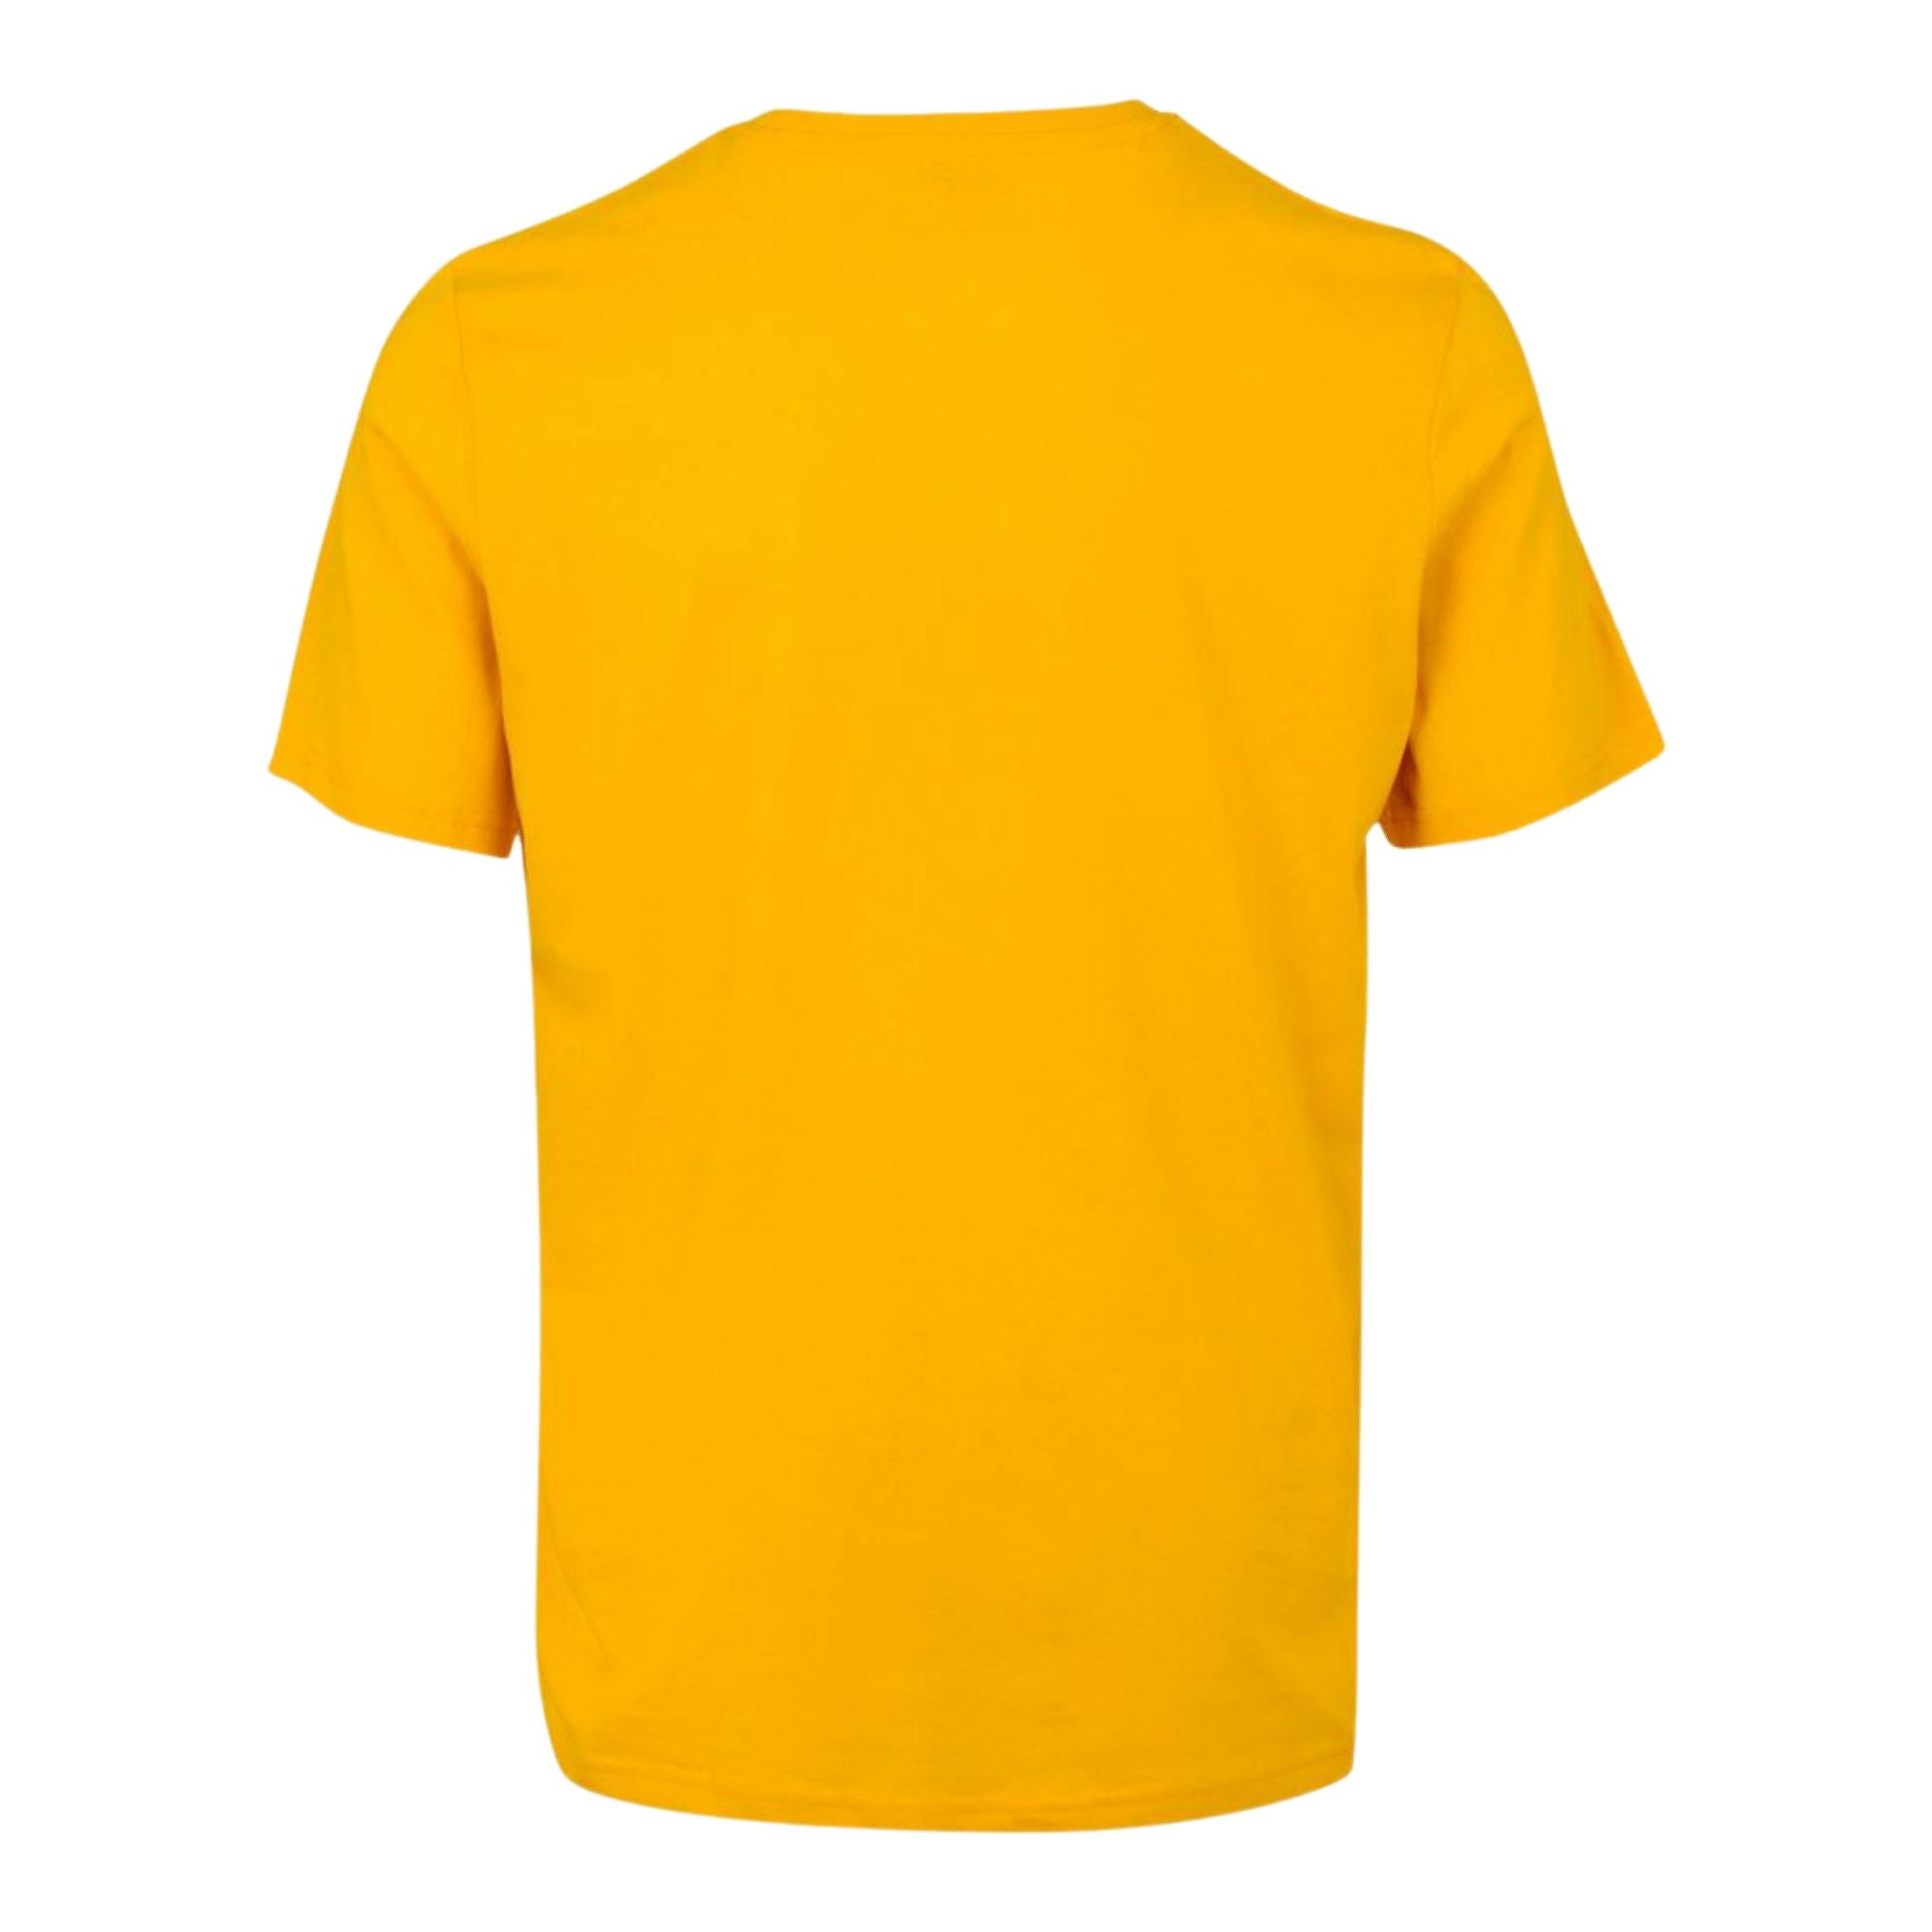 Kappa Meleto T-Shirt Yellow - ITASPORT